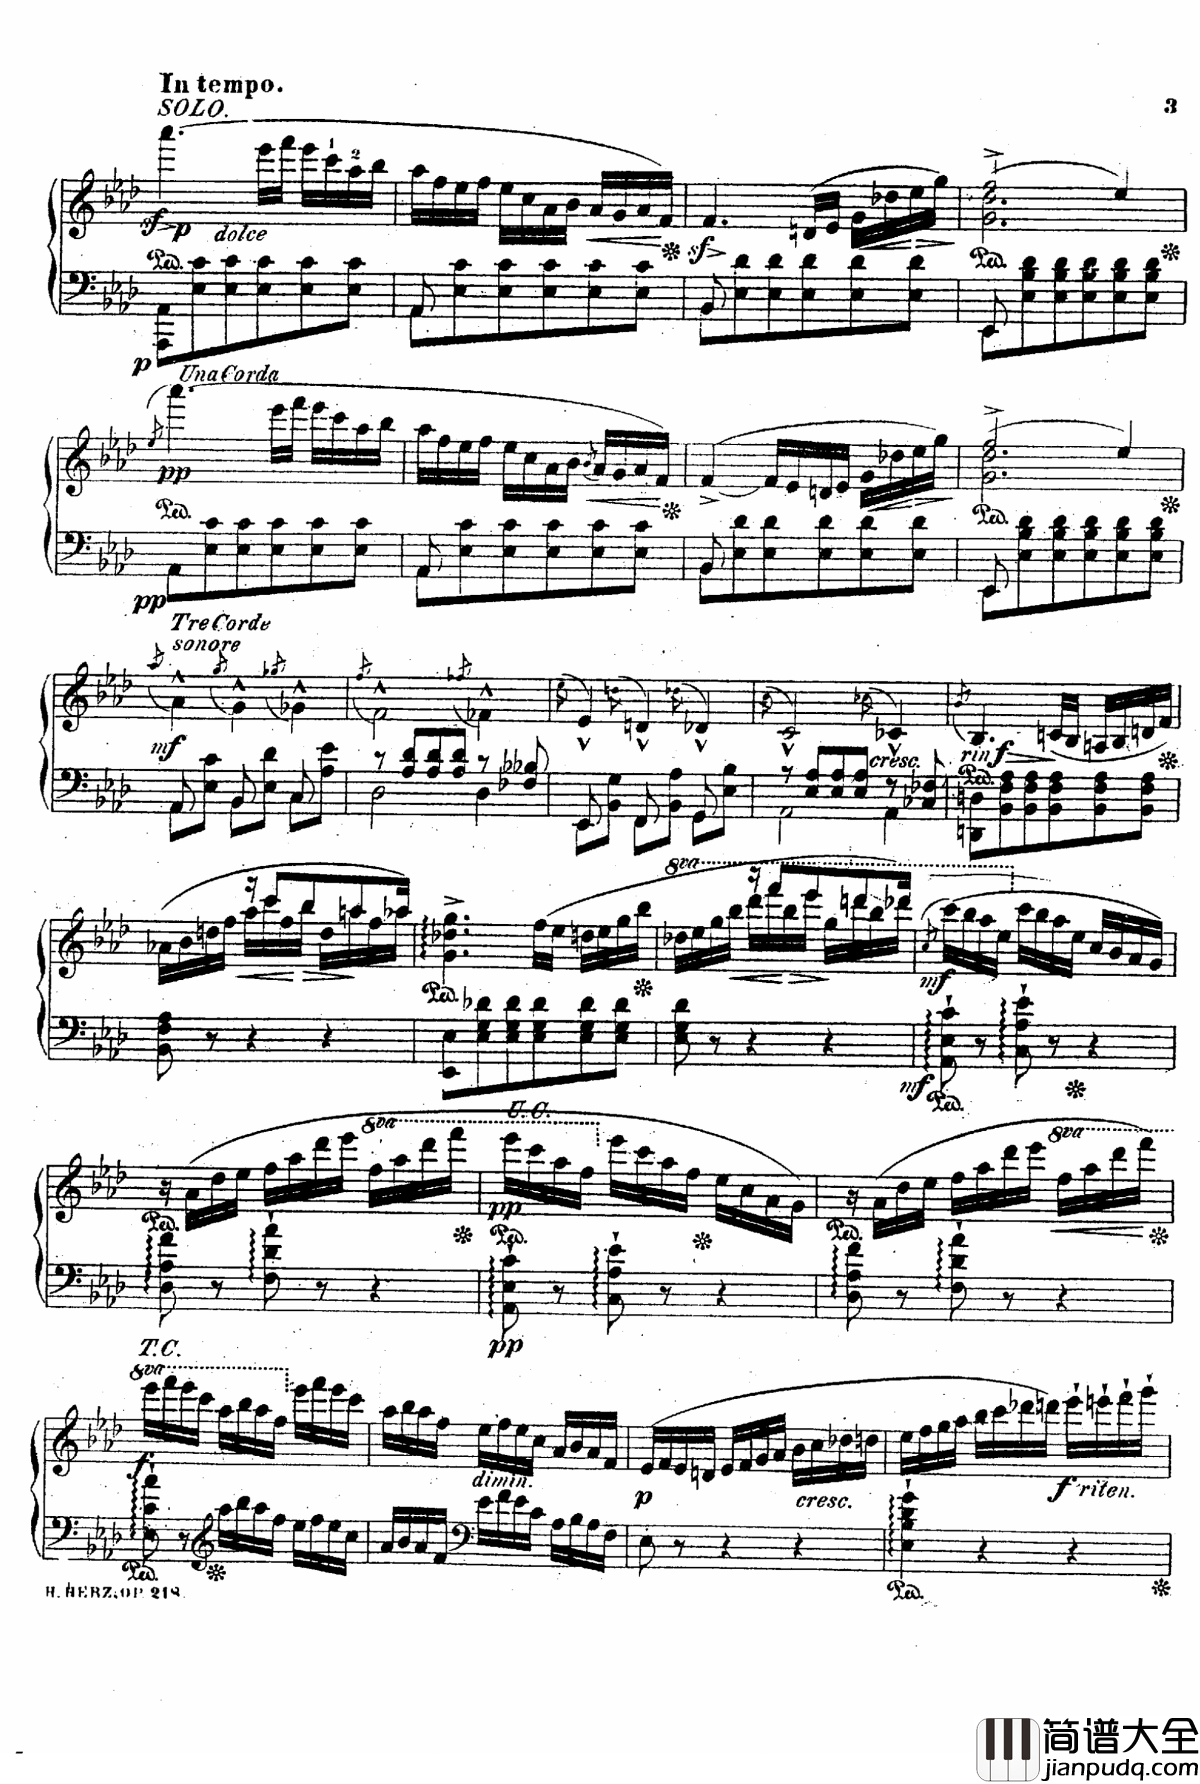 降A大调第八钢琴协奏曲Op.218钢琴谱_赫尔兹